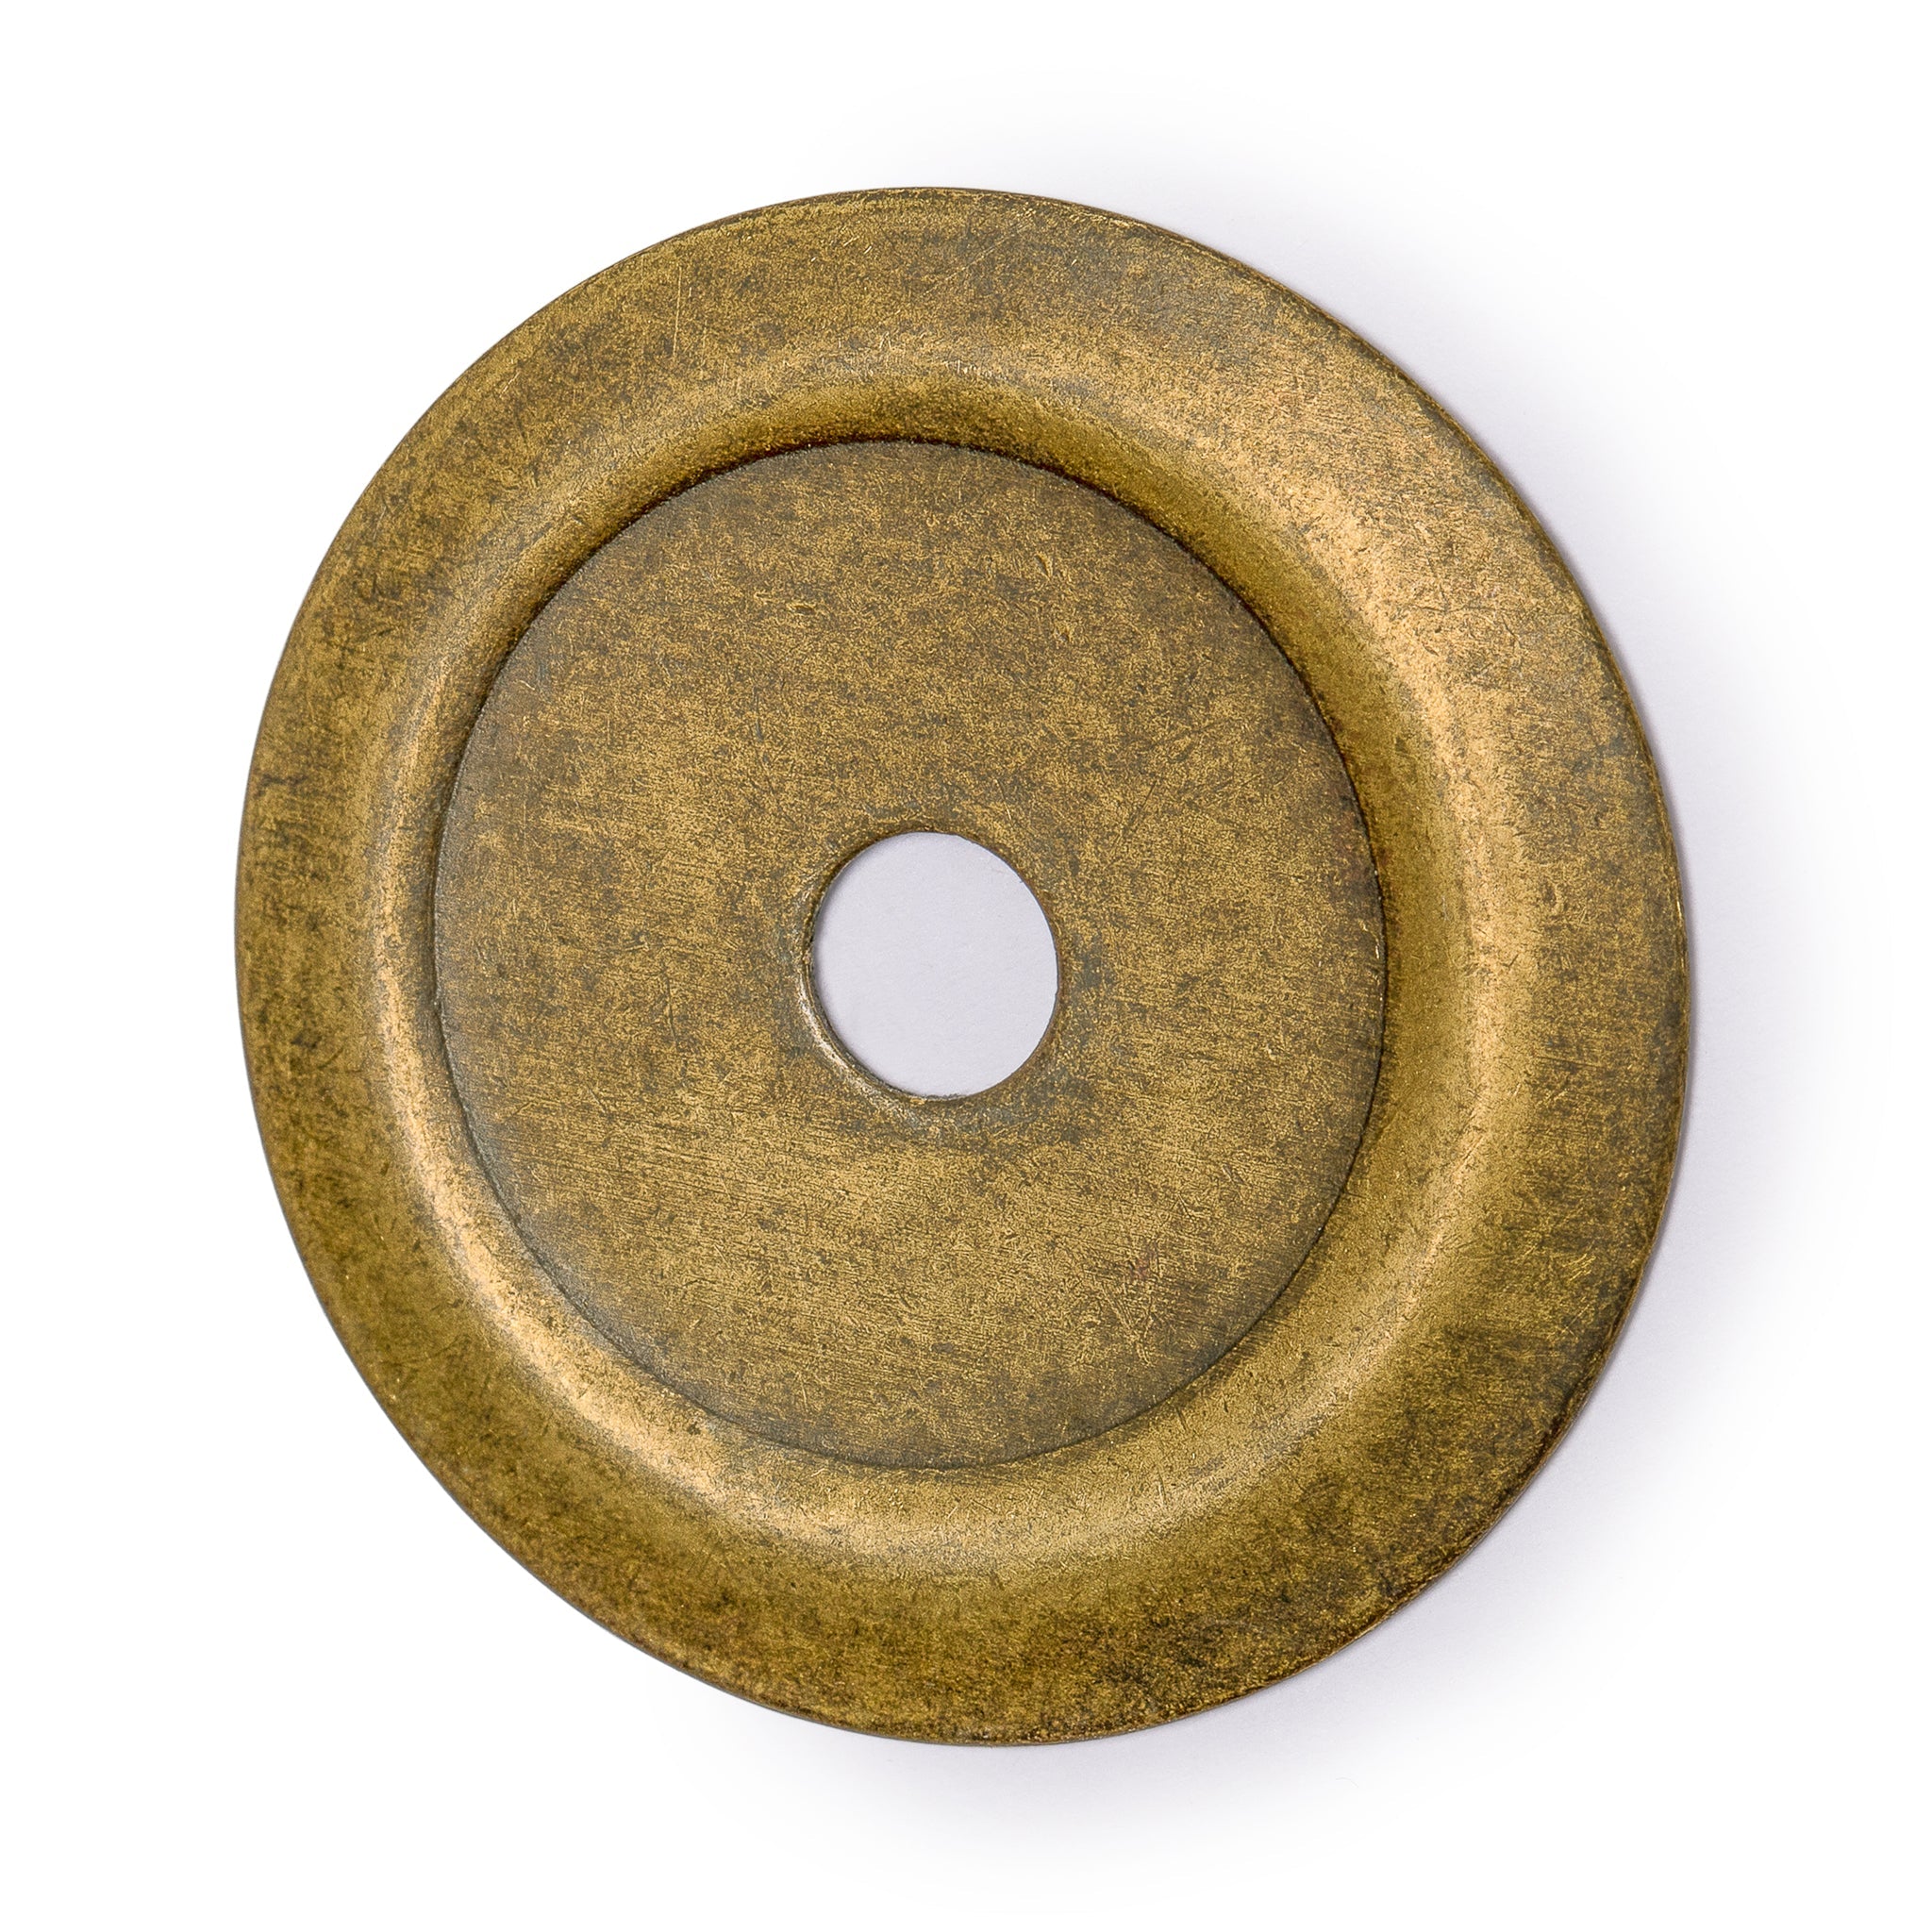 Beveled Round Washers Brass Hardware 1.4" - Set of 10-Chinese Brass Hardware